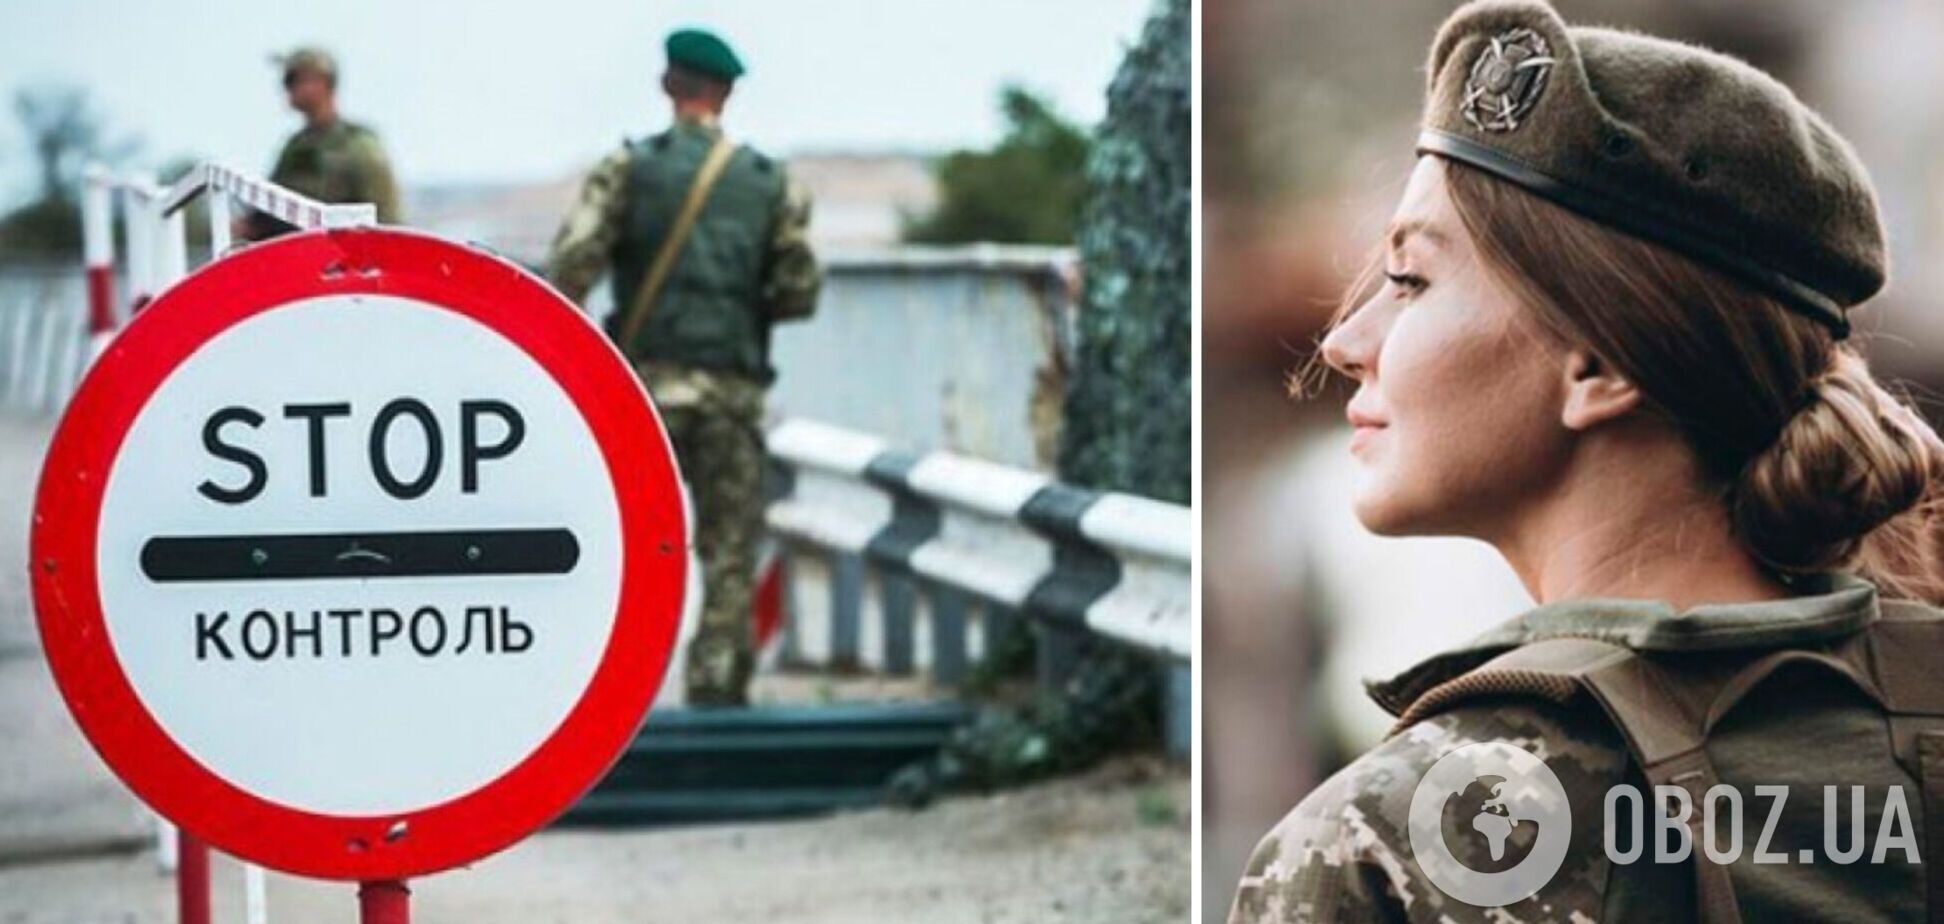 Не только мужчинам: в Украине запретили выезд за границу женщинам-чиновникам